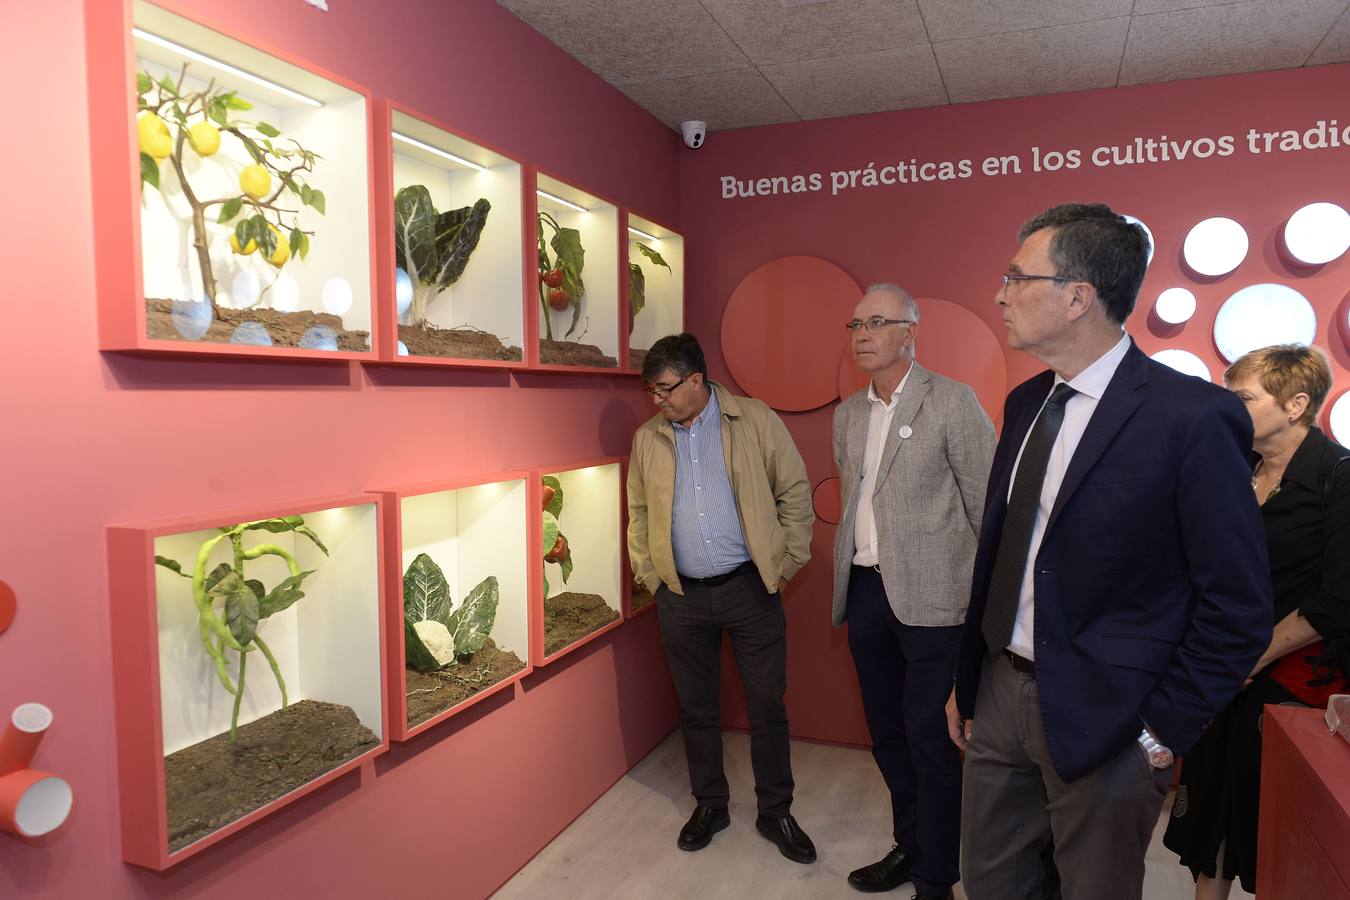 El centro, que abrirá sus puertas en septiembre, rendirá homenaje a La Contraparada por llevar un milenio regando los cultivos murcianos